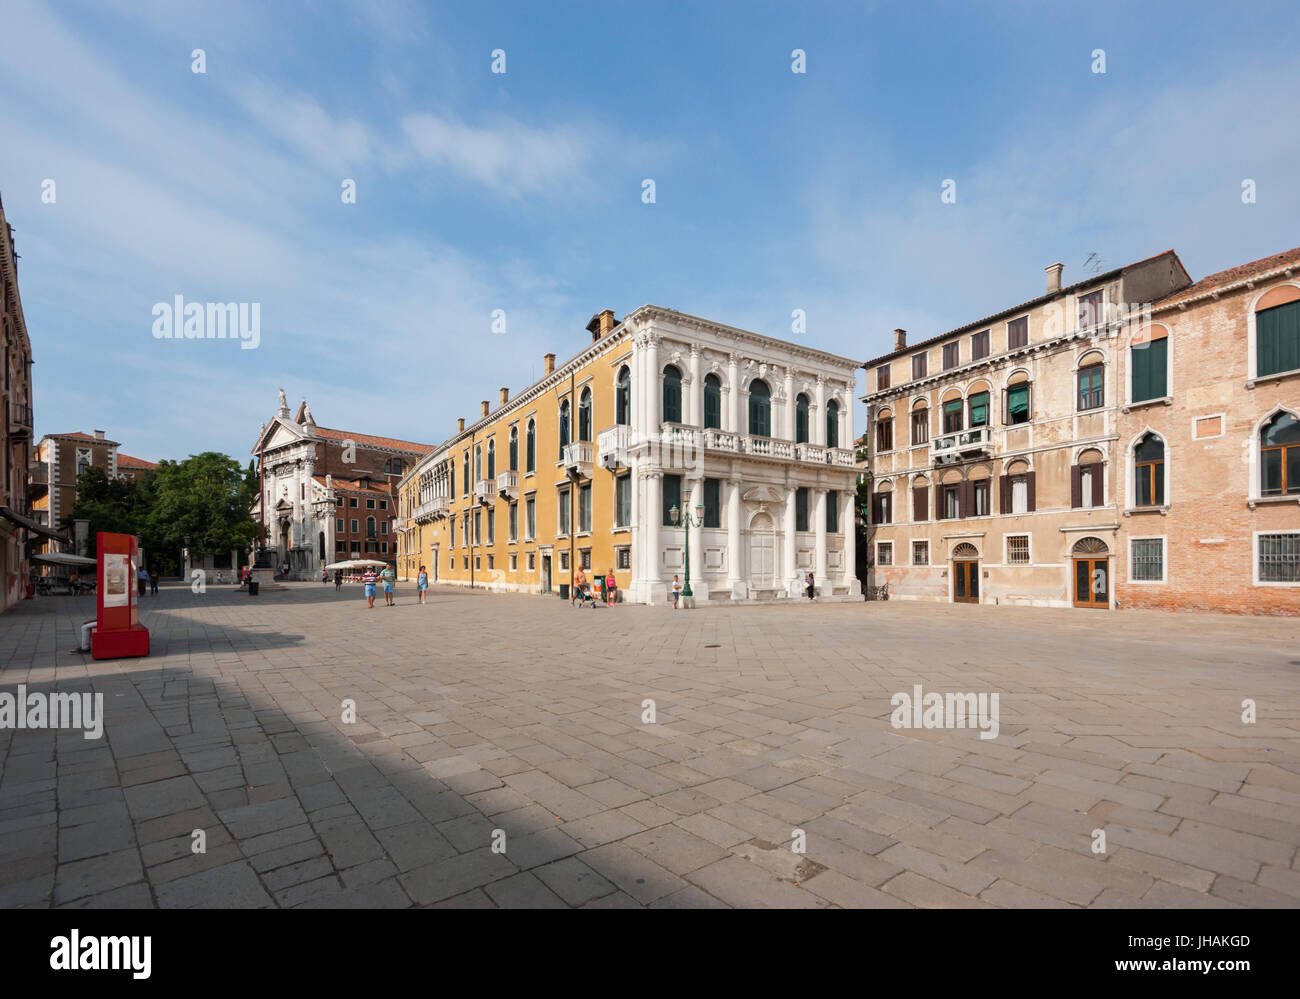 Imágenes de Venecia menos conocida, Italia: Un antiguo palacio en medio de una plaza de campo en la zona de San Marco Foto de stock